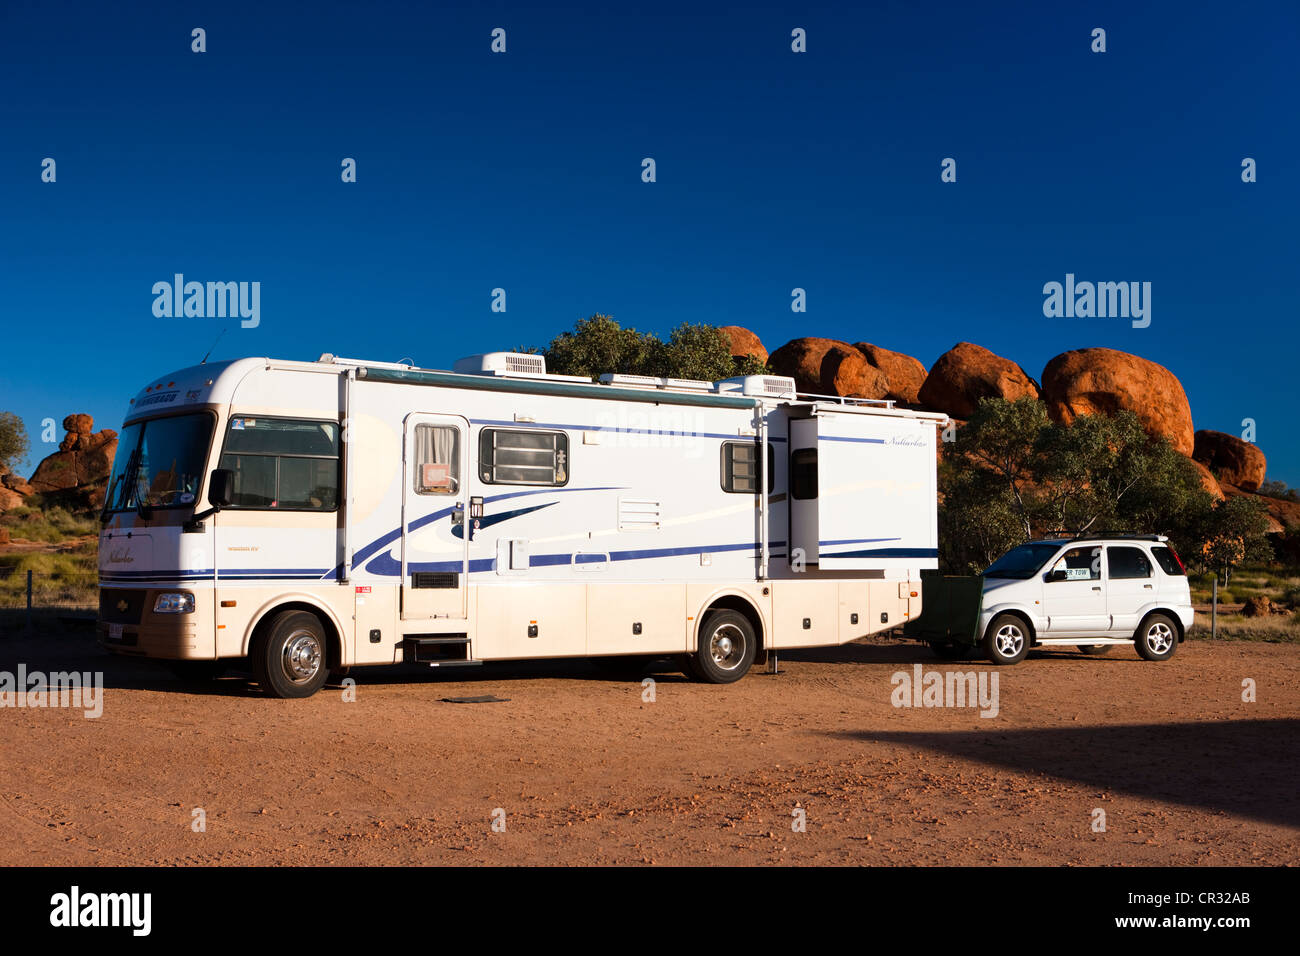 Wohnmobil mit einem Auto auf der Rückseite angebracht parkte auf einem Campingplatz, Devils Marbles, Northern Territory, Australien Stockfoto